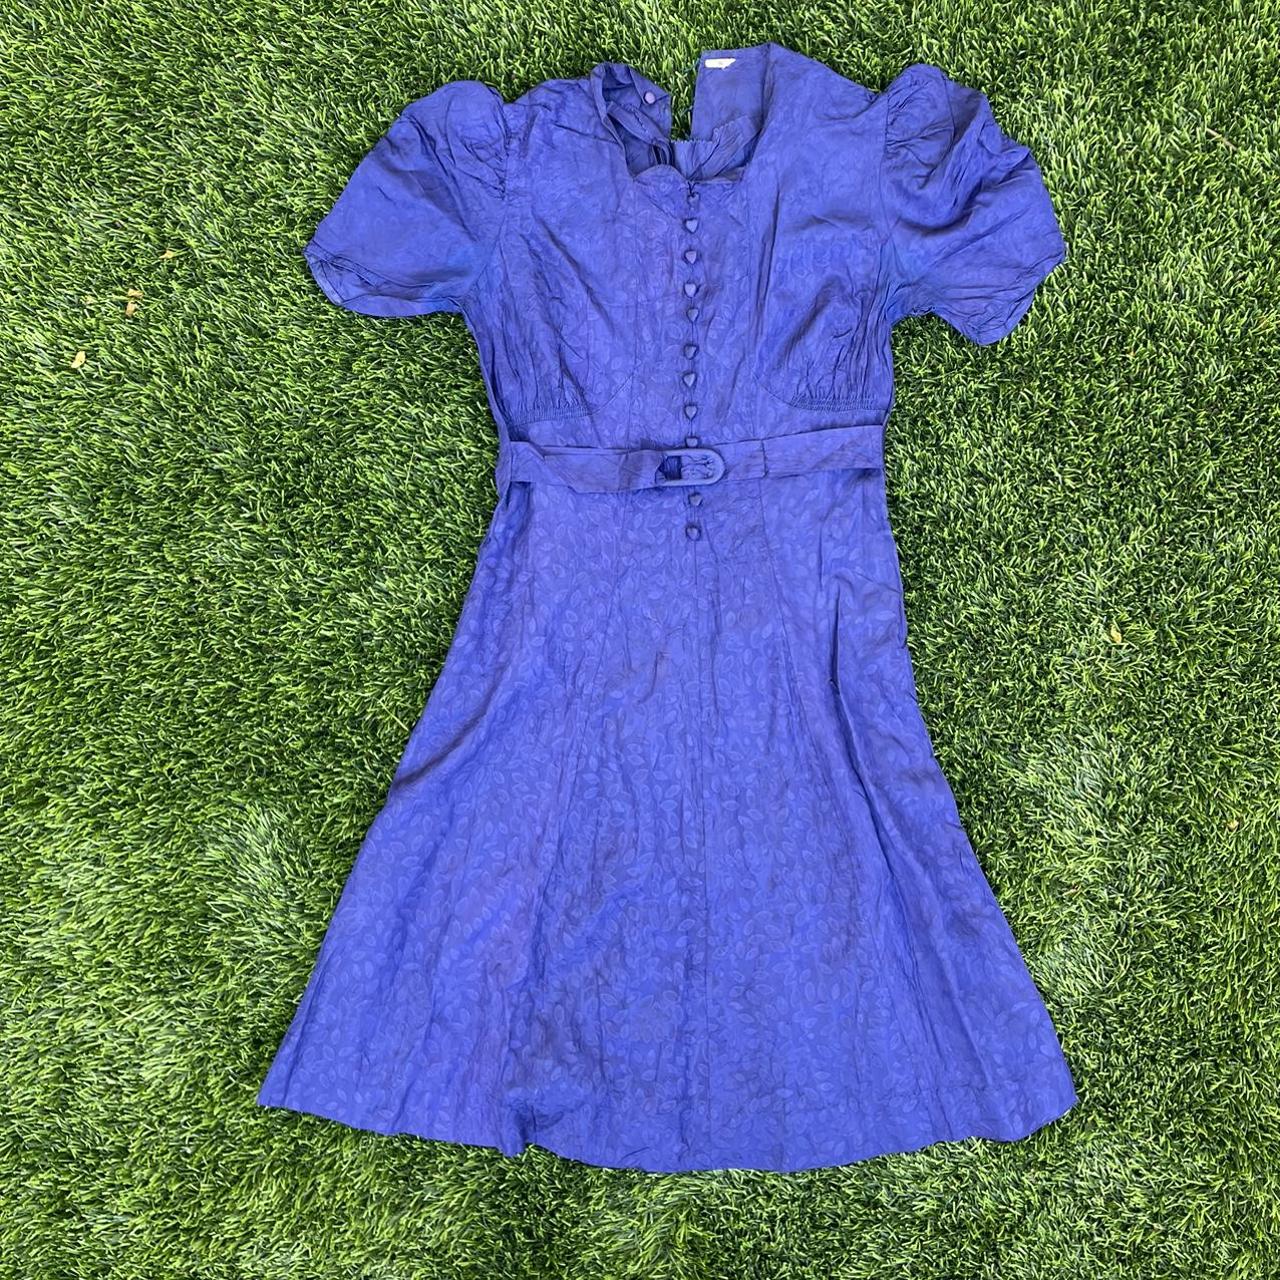 Vintage 1930s Blue Taffeta Puff Sleeve Dress... - Depop